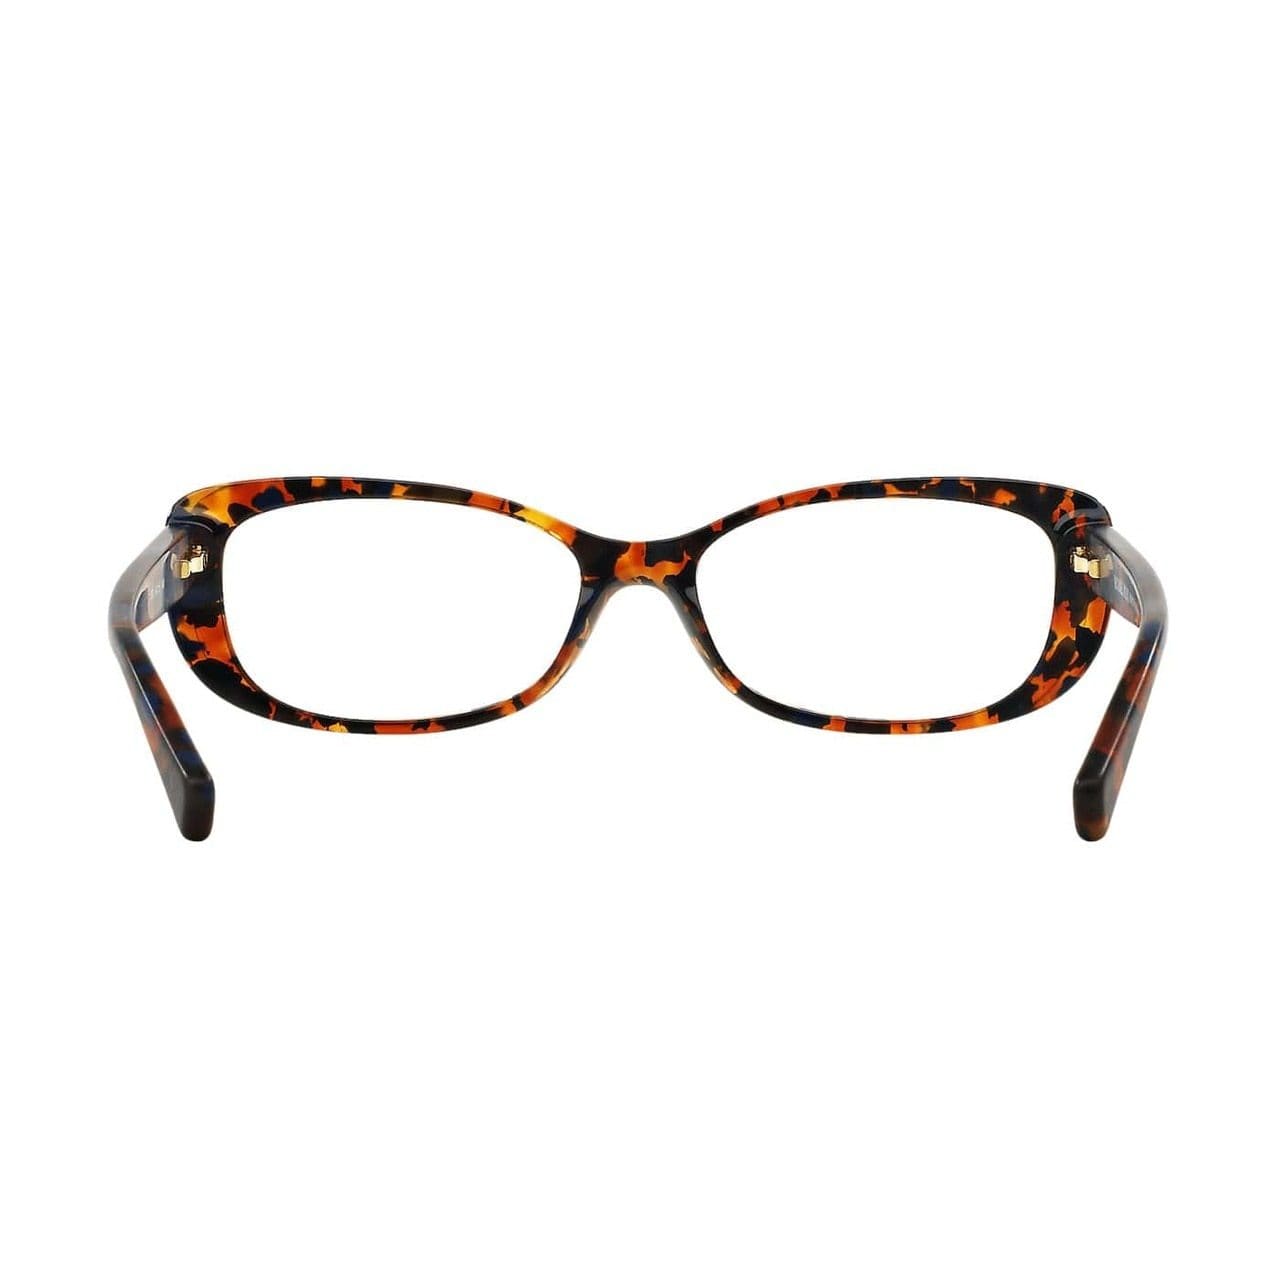 Michael Kors MK 4023-3063 Provincetown Navy Tortoise Rectangular Women's Eyeglasses 725125941518